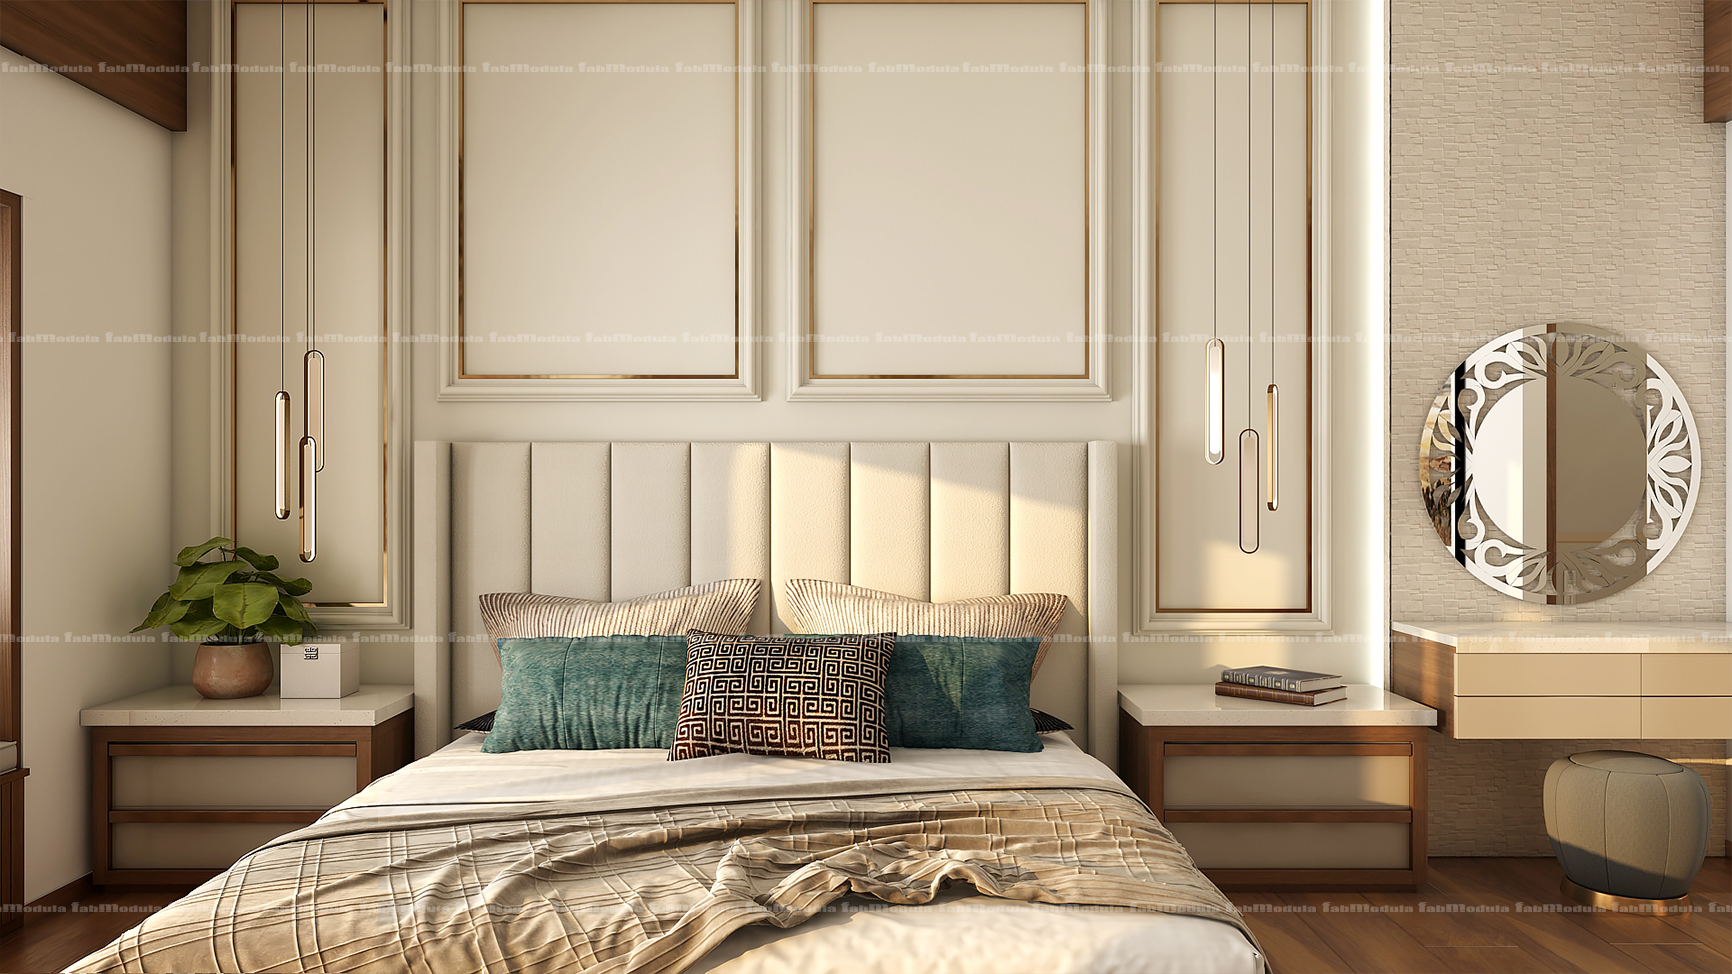 FabModula luxury master bedroom